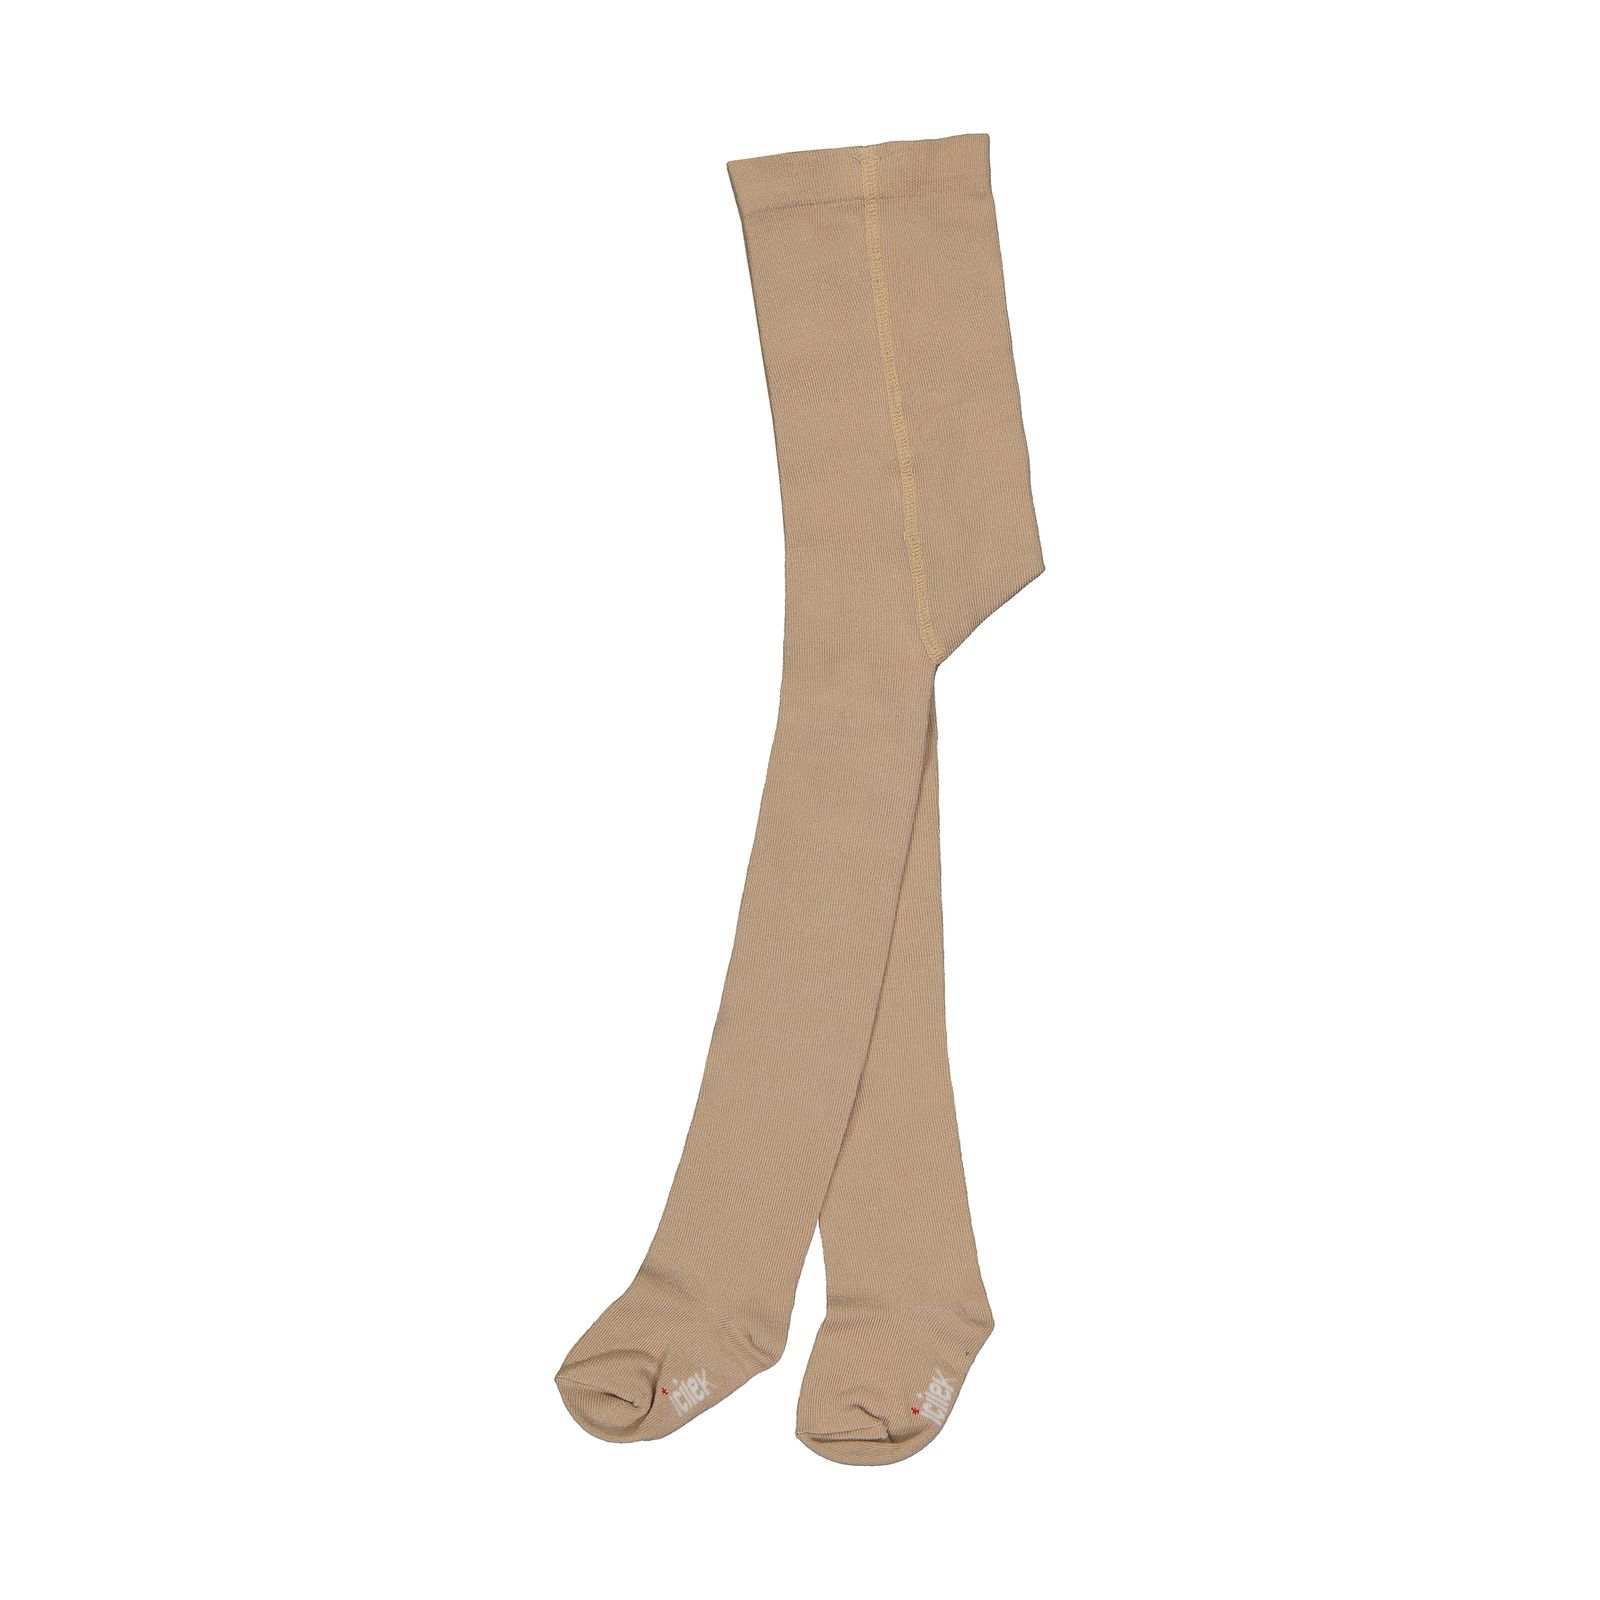 جوراب شلواری دخترانه آی چیلک مدل 24631063-09 -  - 1